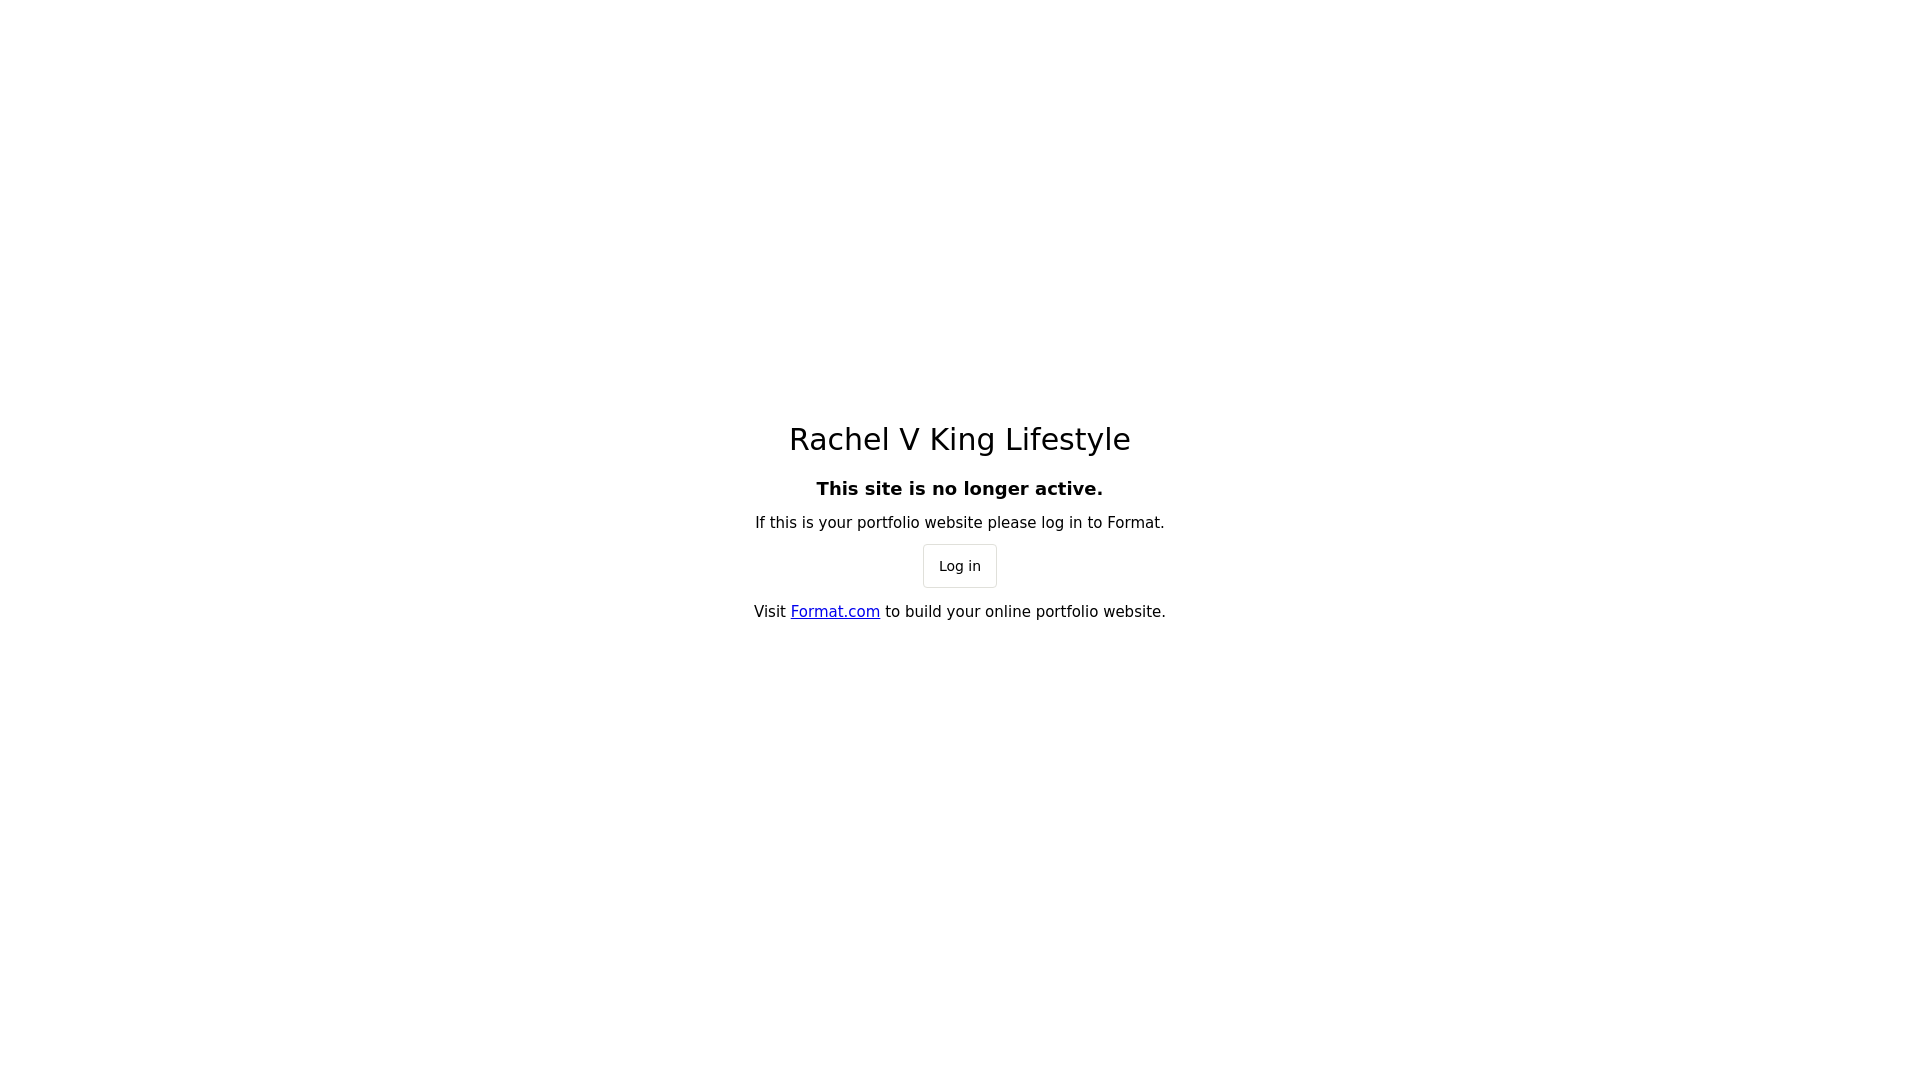 Rachel V King Lifestyle desktop